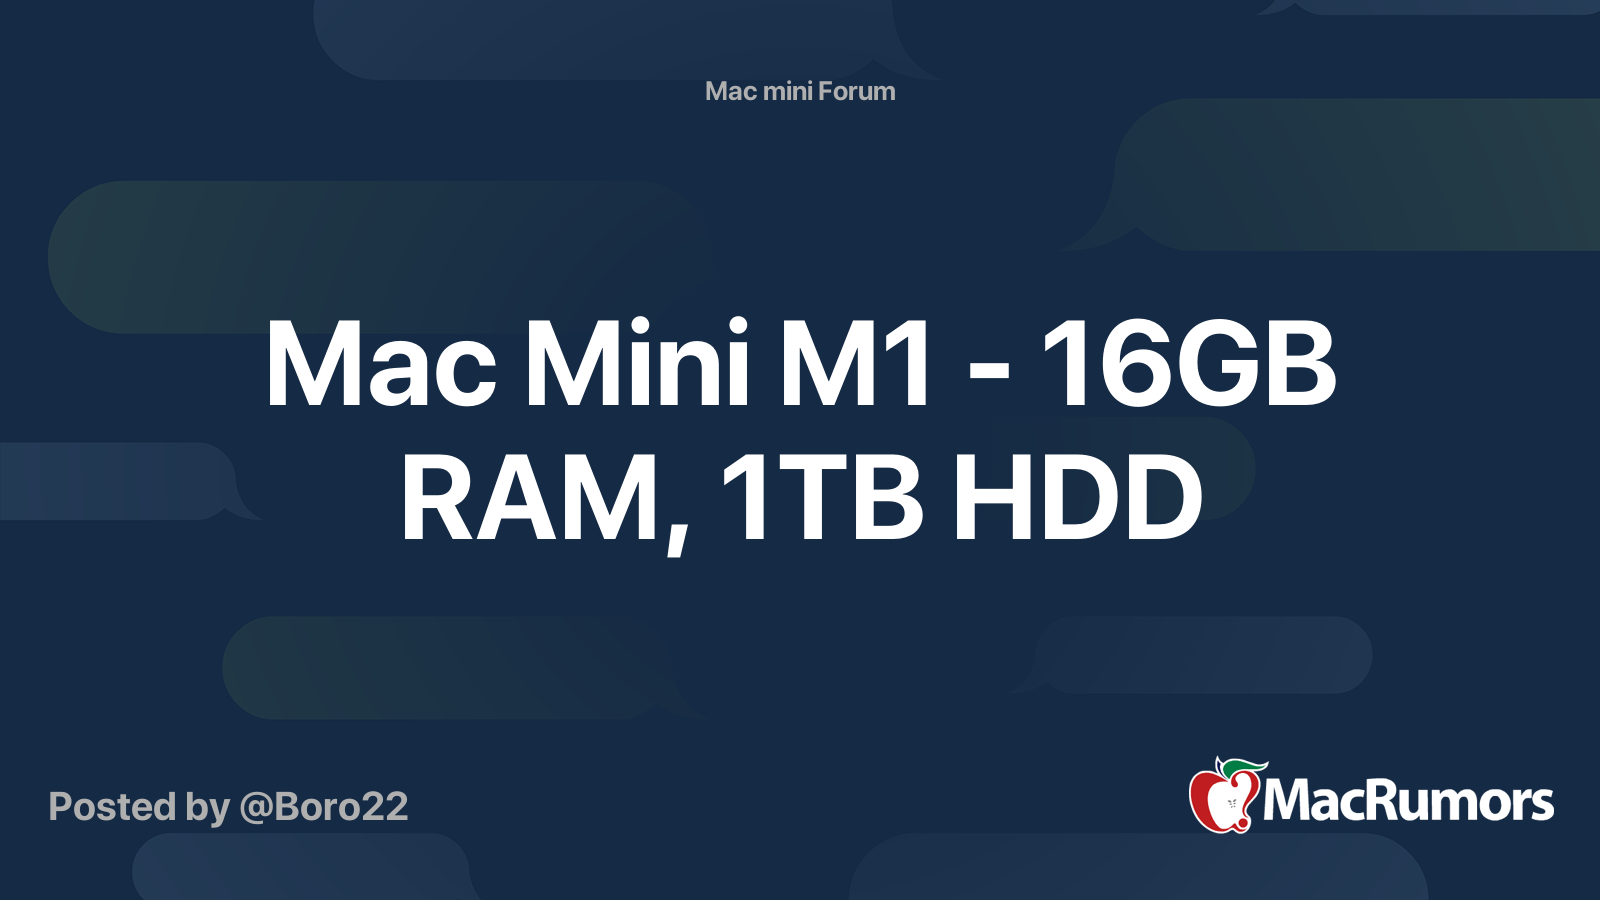 Mac Mini M1 - 16GB RAM, 1TB HDD